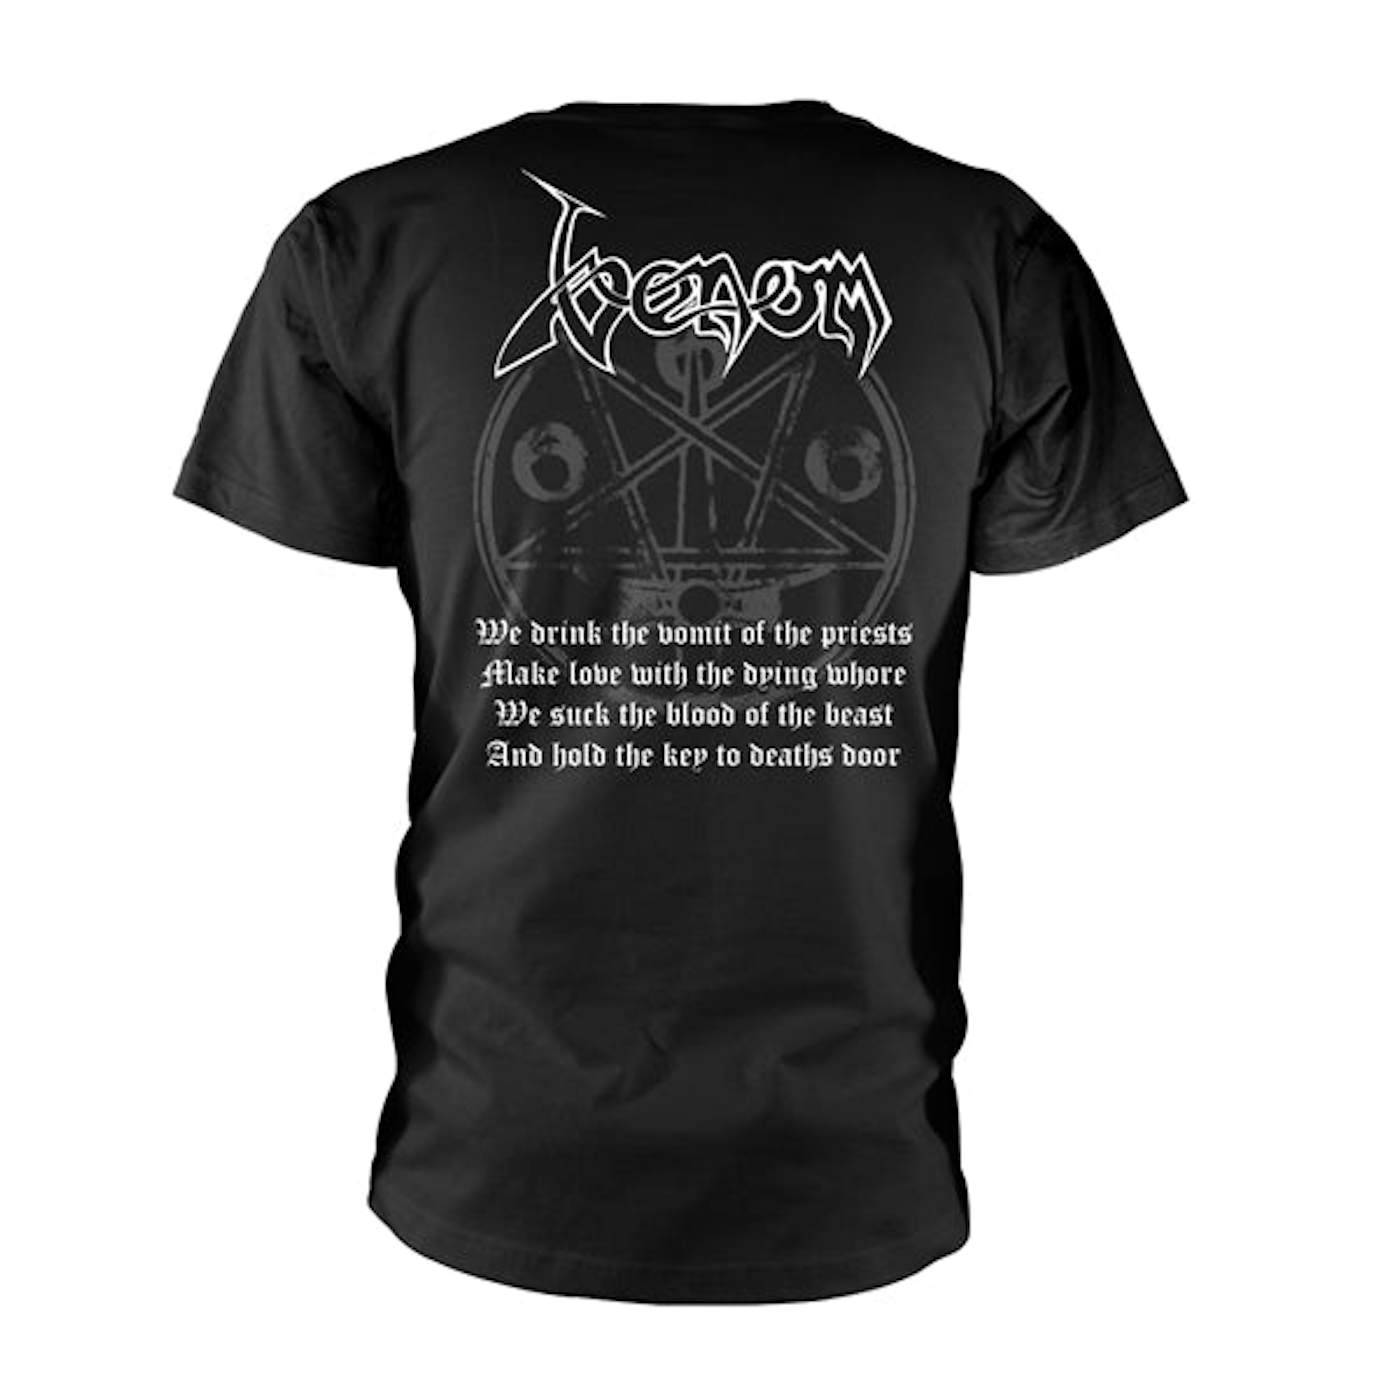  Venom T Shirt - Black Metal (White)